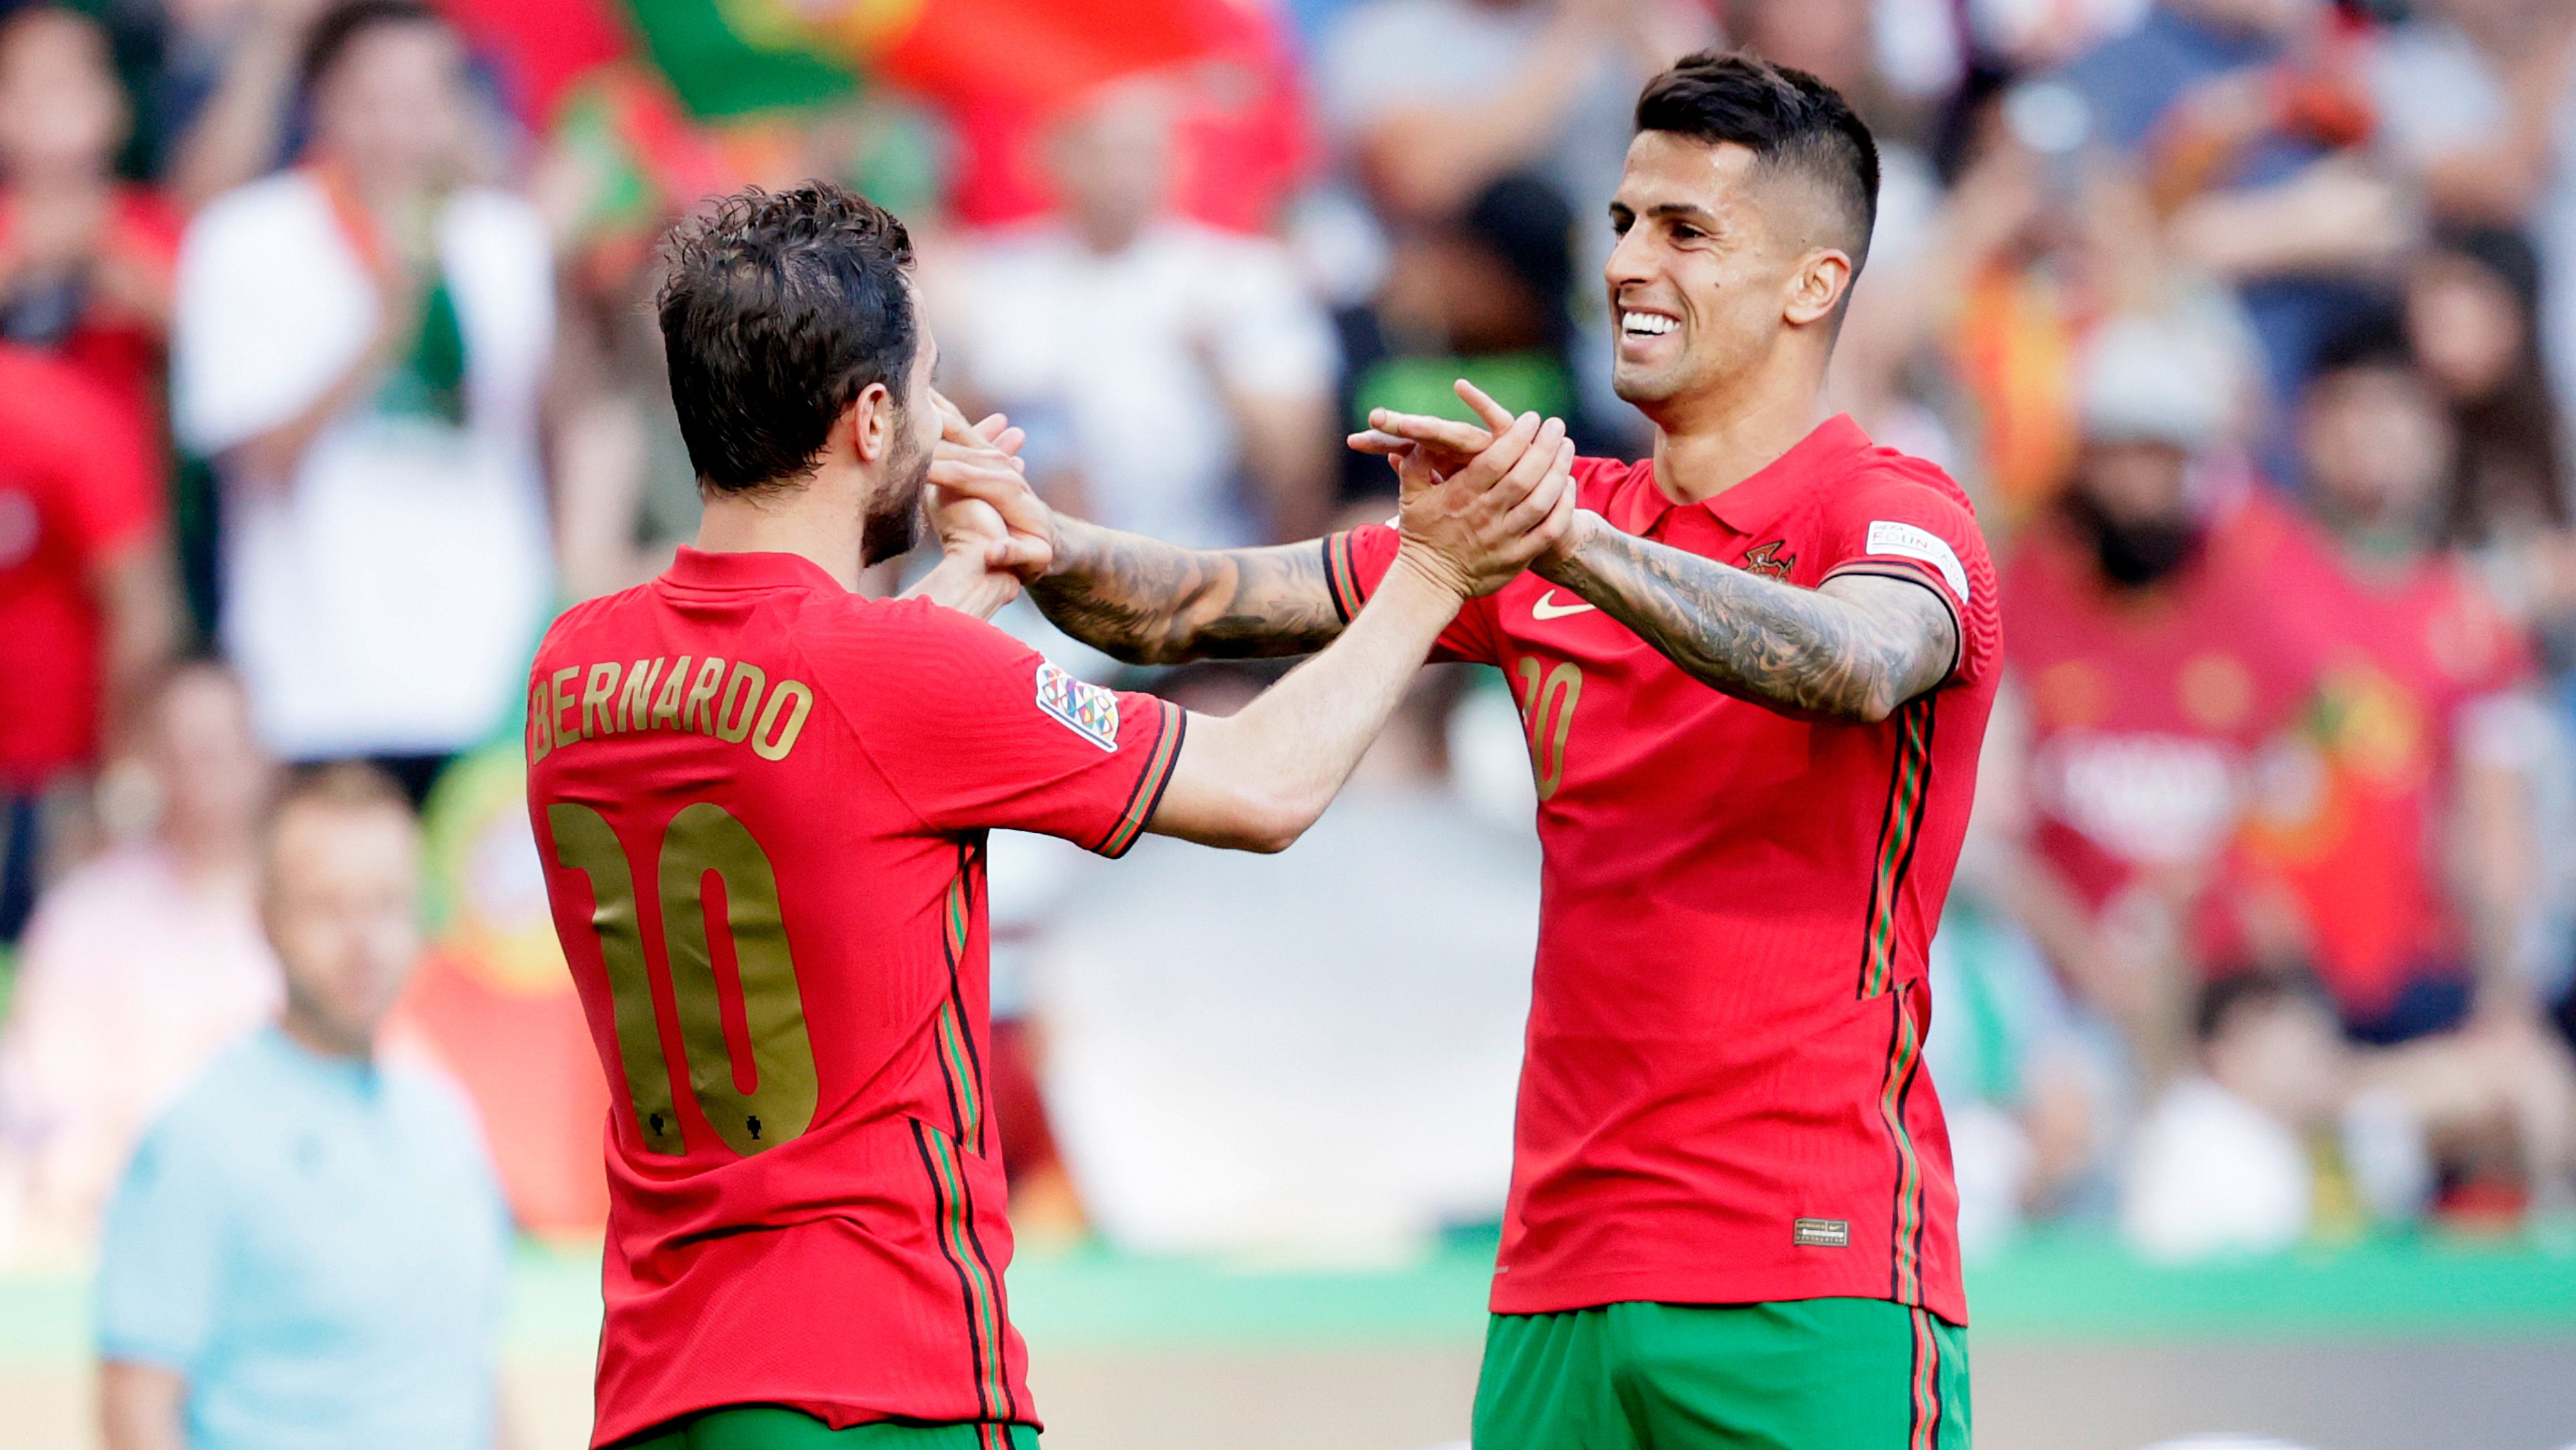 Portugal chega ao Euro 2024 com contas certas, Crónica de jogo